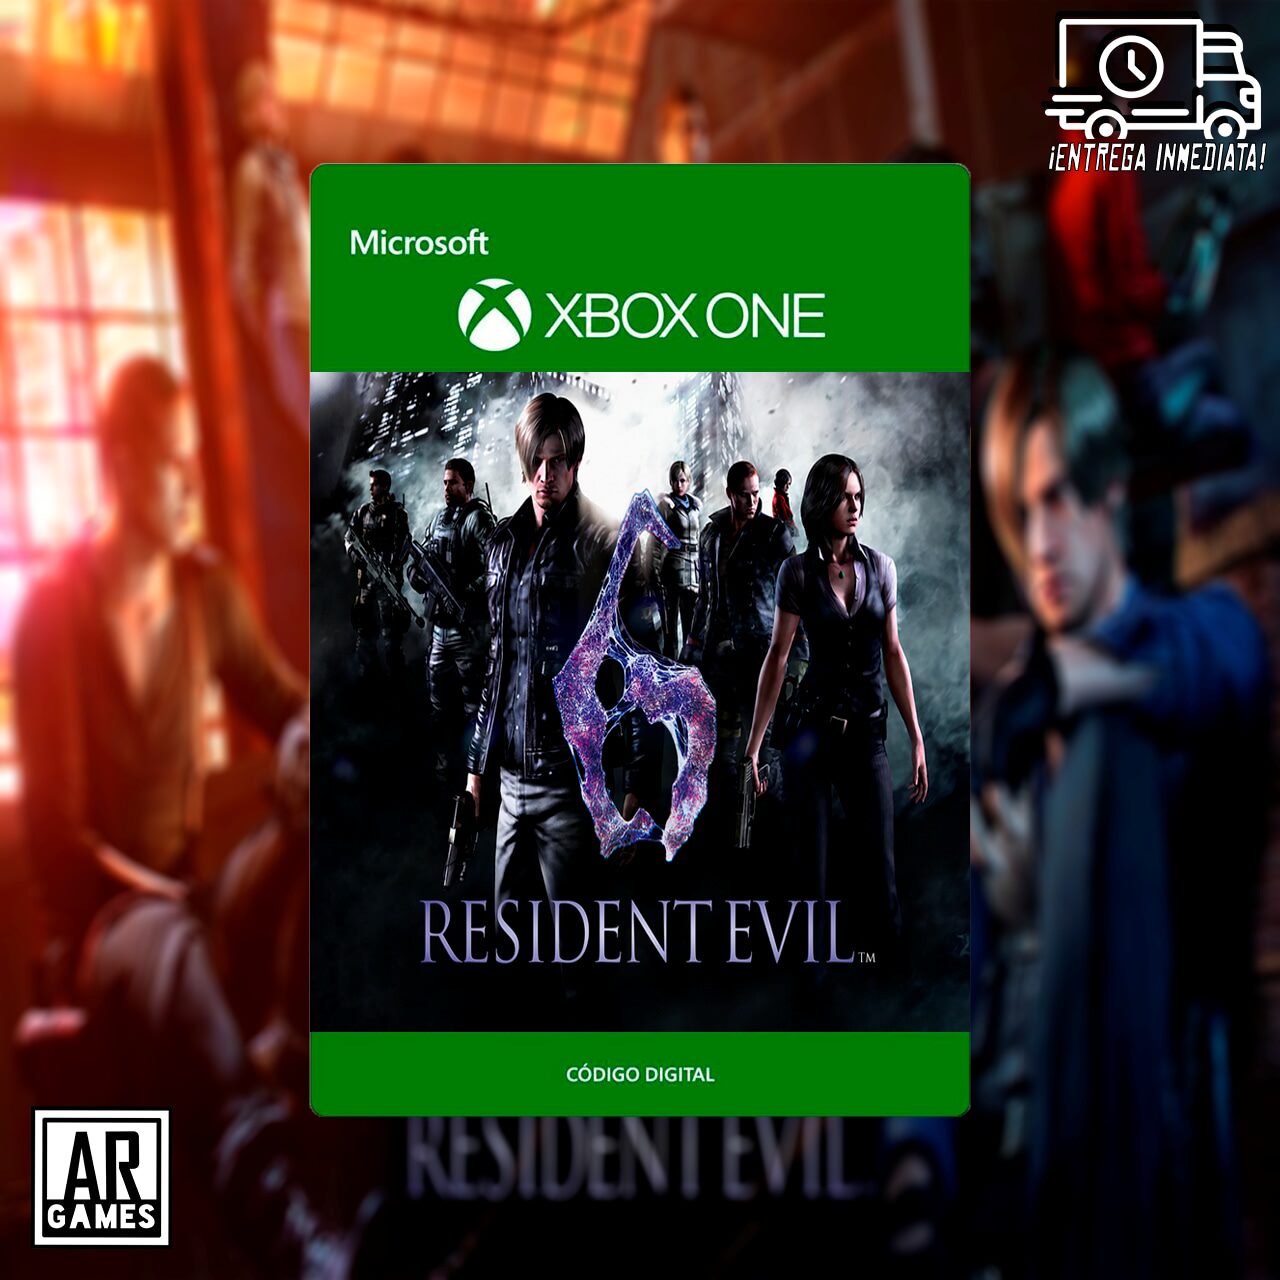 Resident Evil 6 Argames